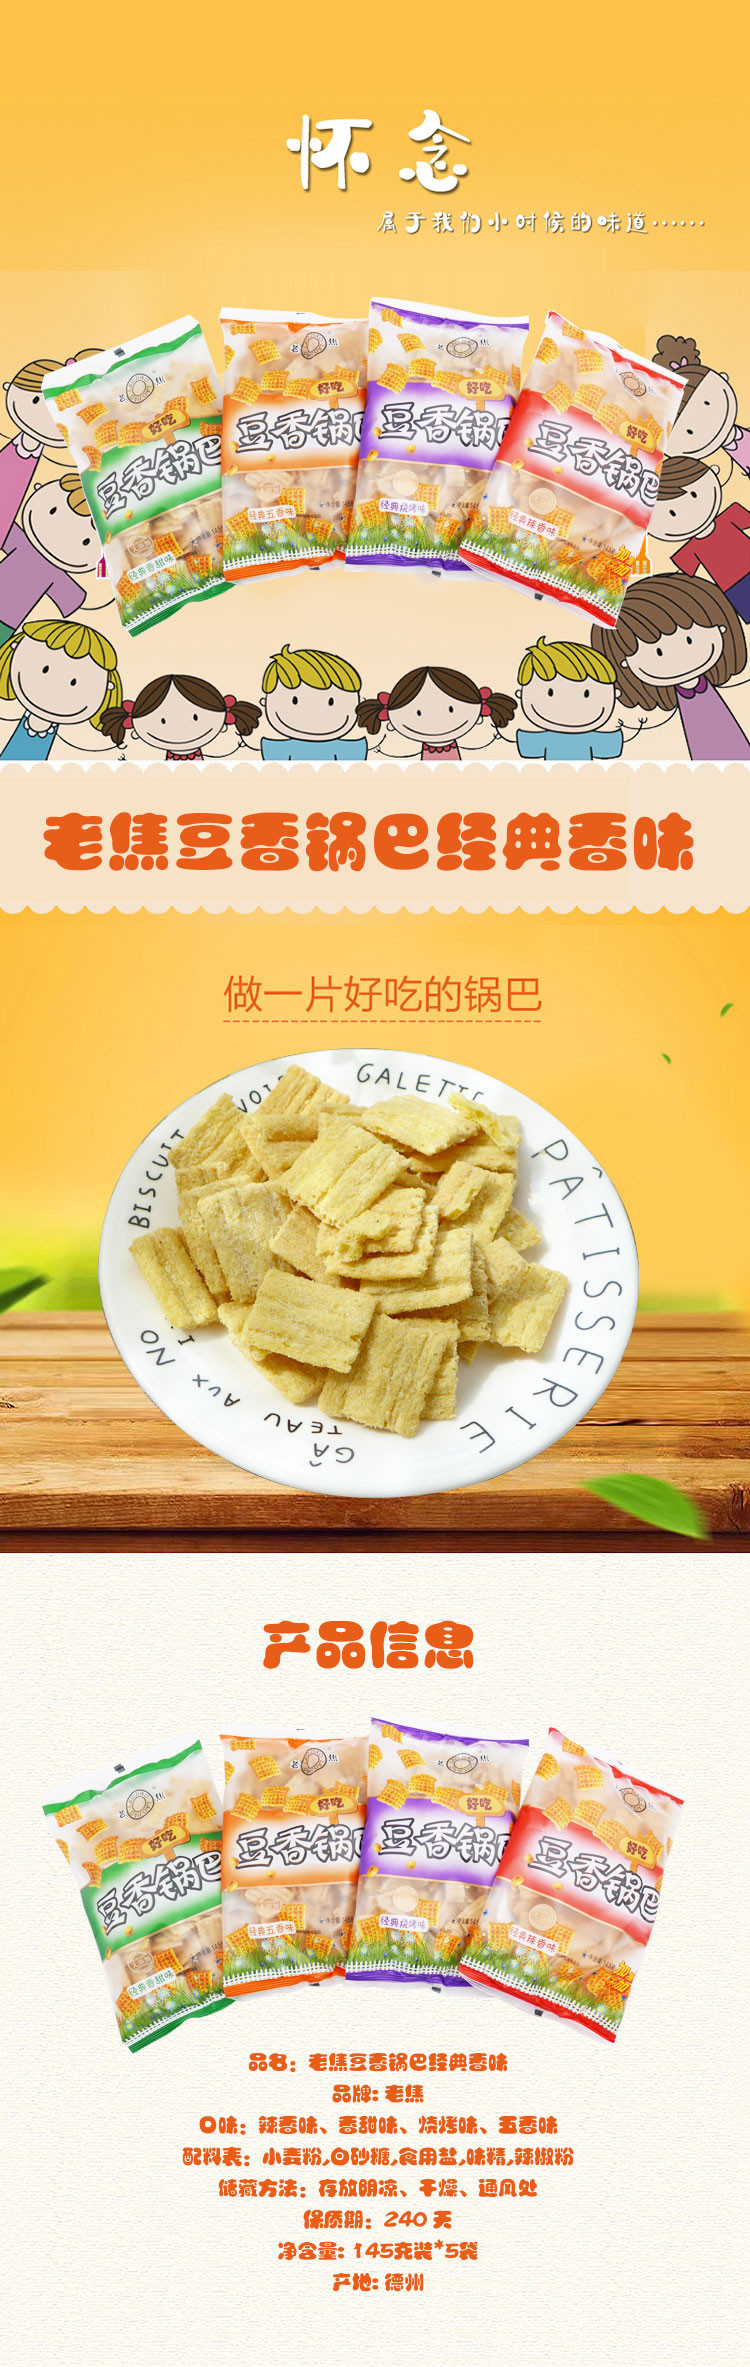 老焦豆香锅巴经典香味145克装*5袋膨化食品零食休闲小吃